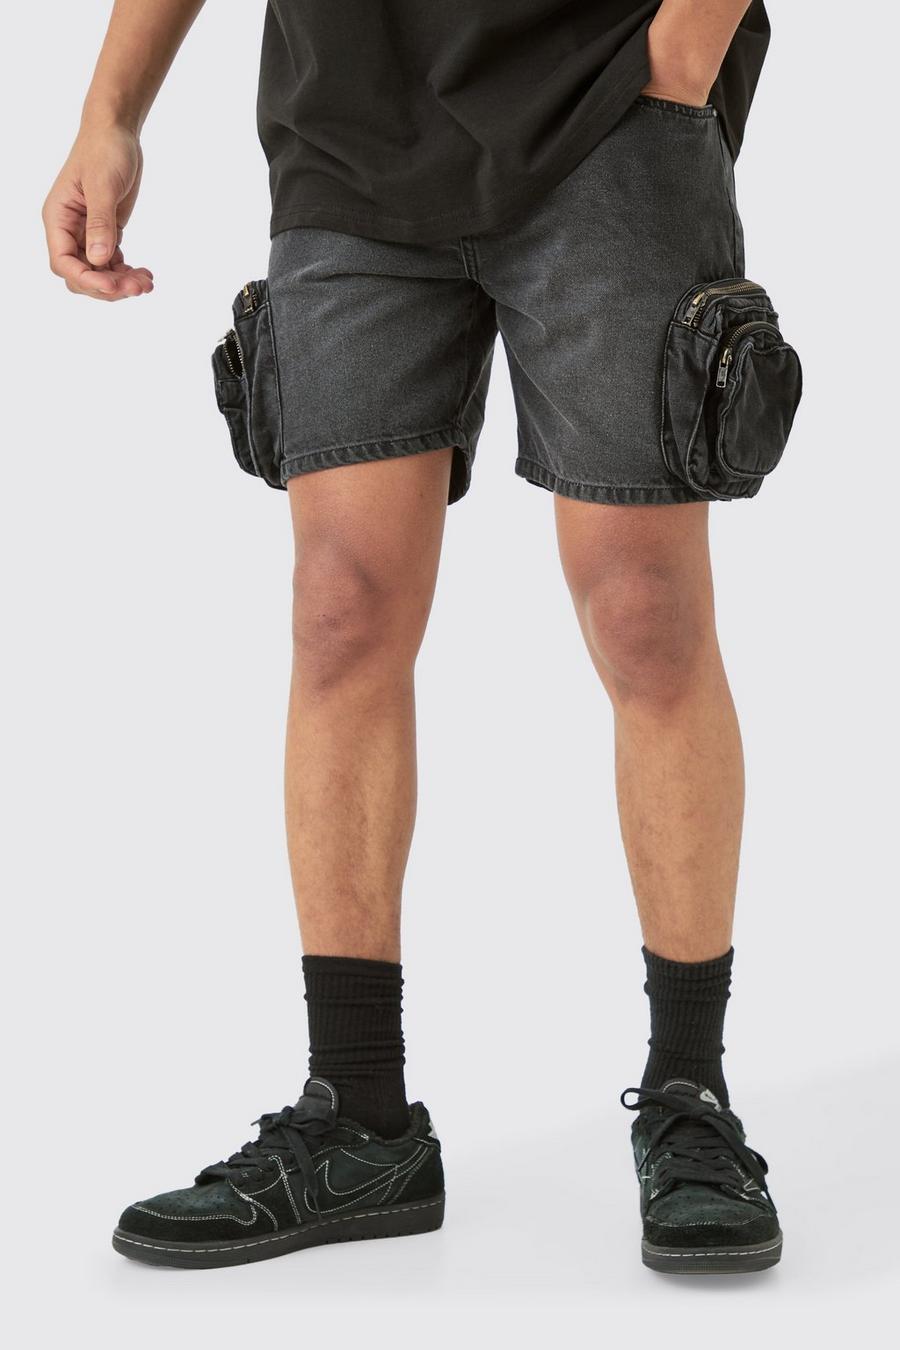 Pantalones cortos vaqueros ajustados con bolsillos cargo 3D en negro desteñido, Washed black